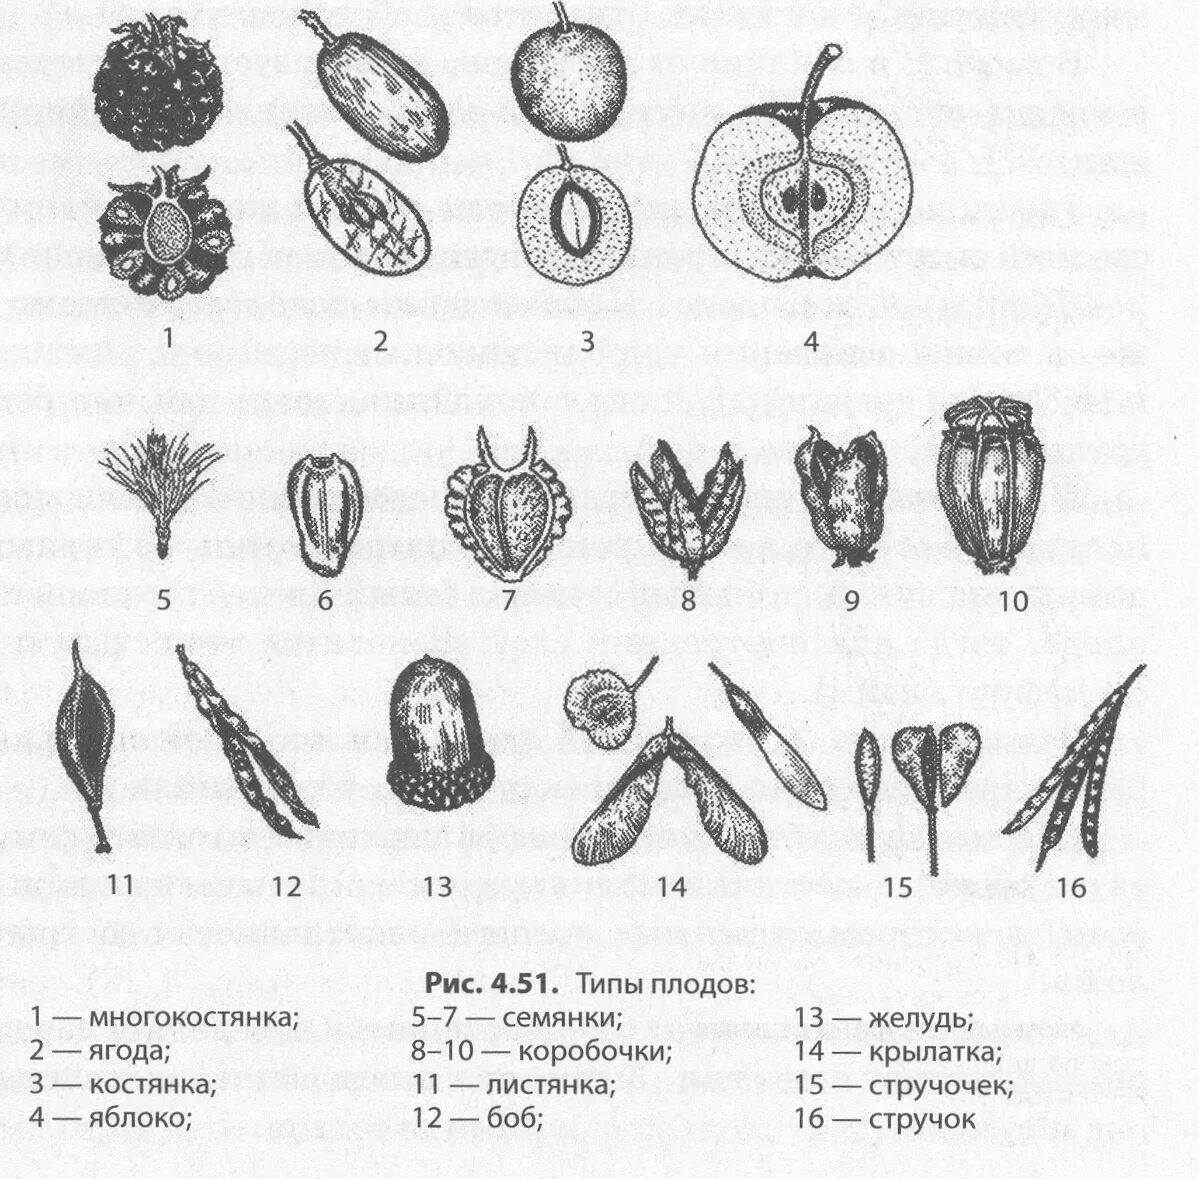 Какие типы плодов изображены на рисунке